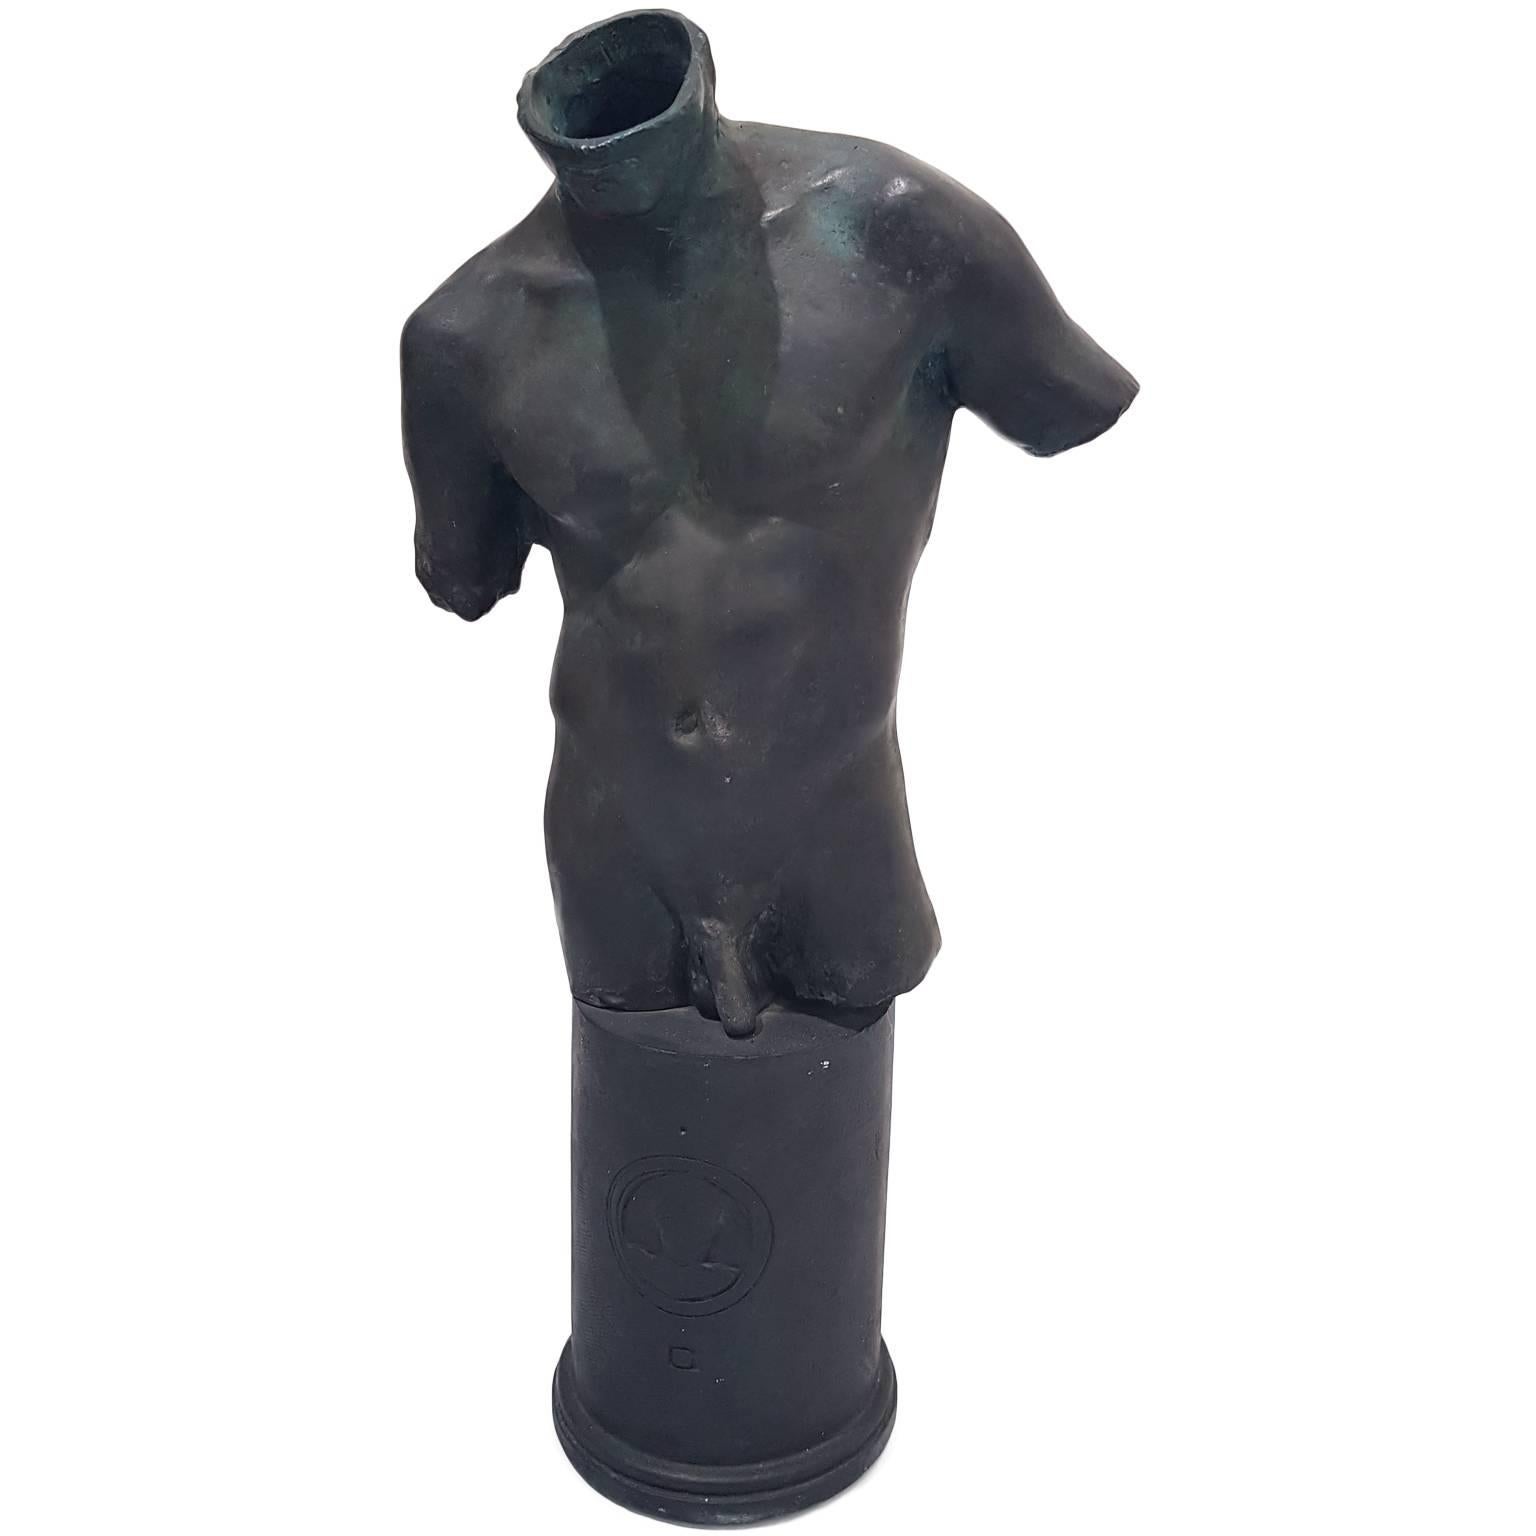 Male Bust - Bronze Sculpture by Igor Mitoraj - 1991